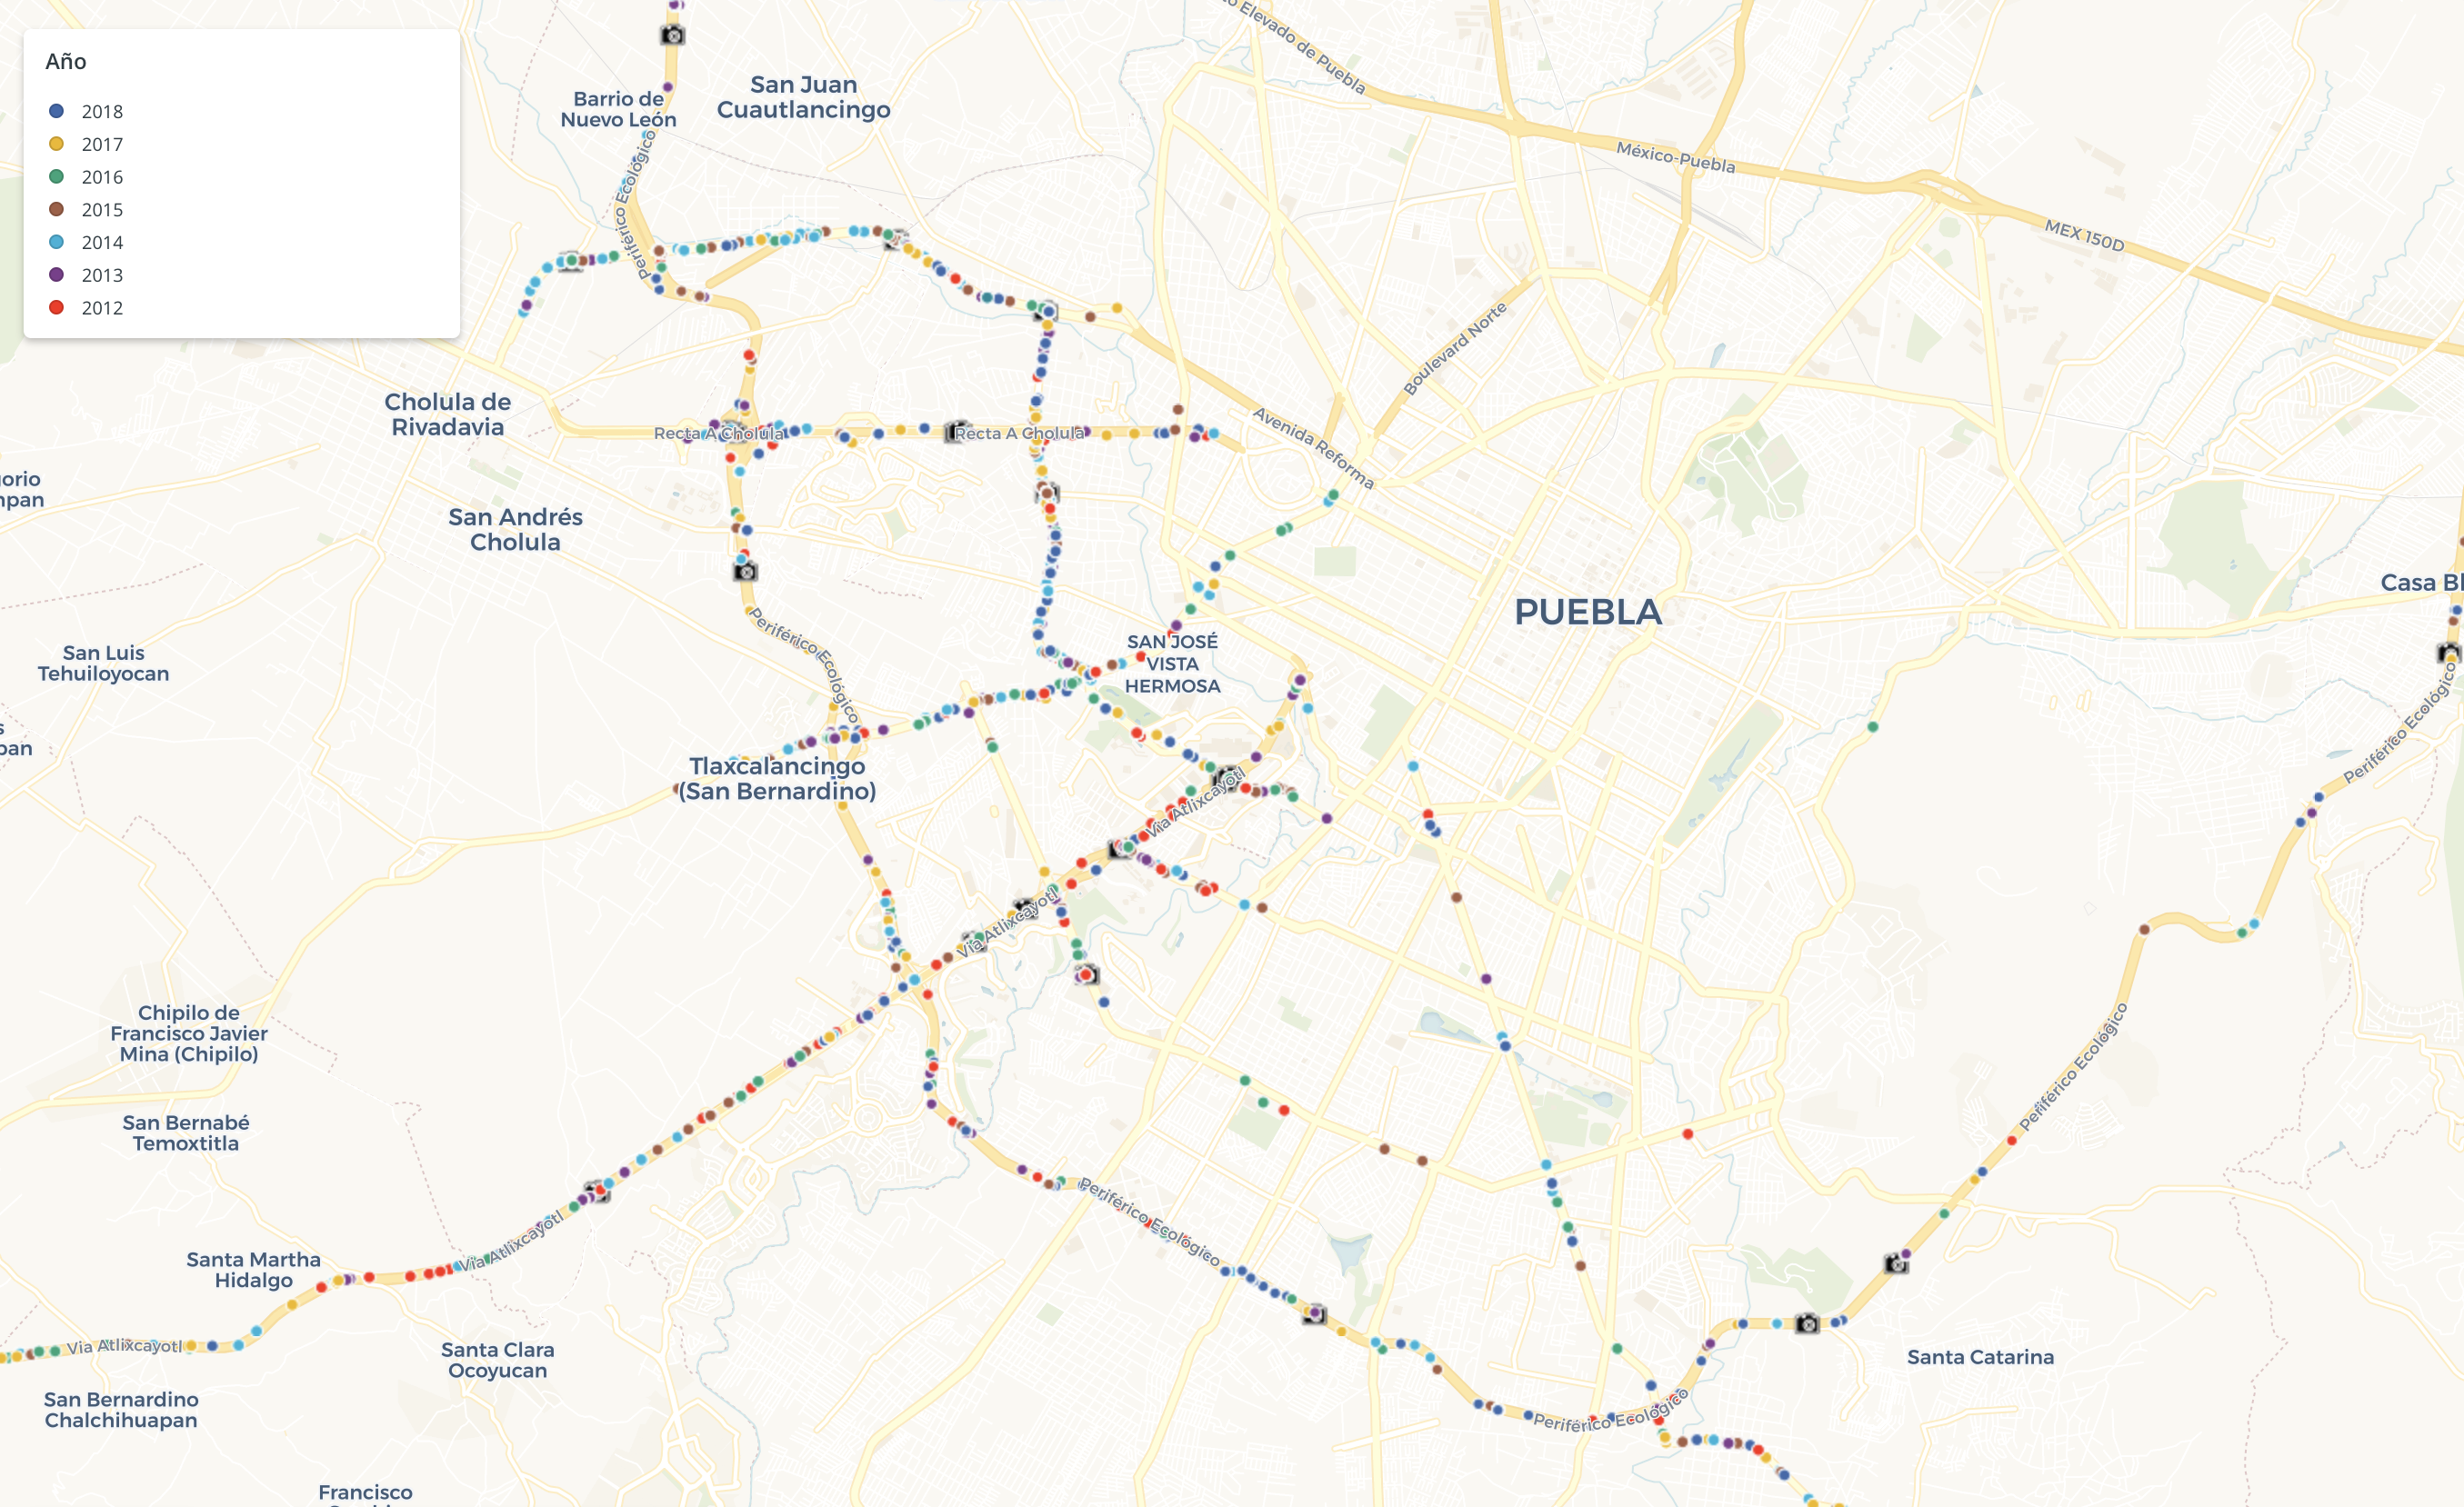 Mapas de accidentes viales en Puebla